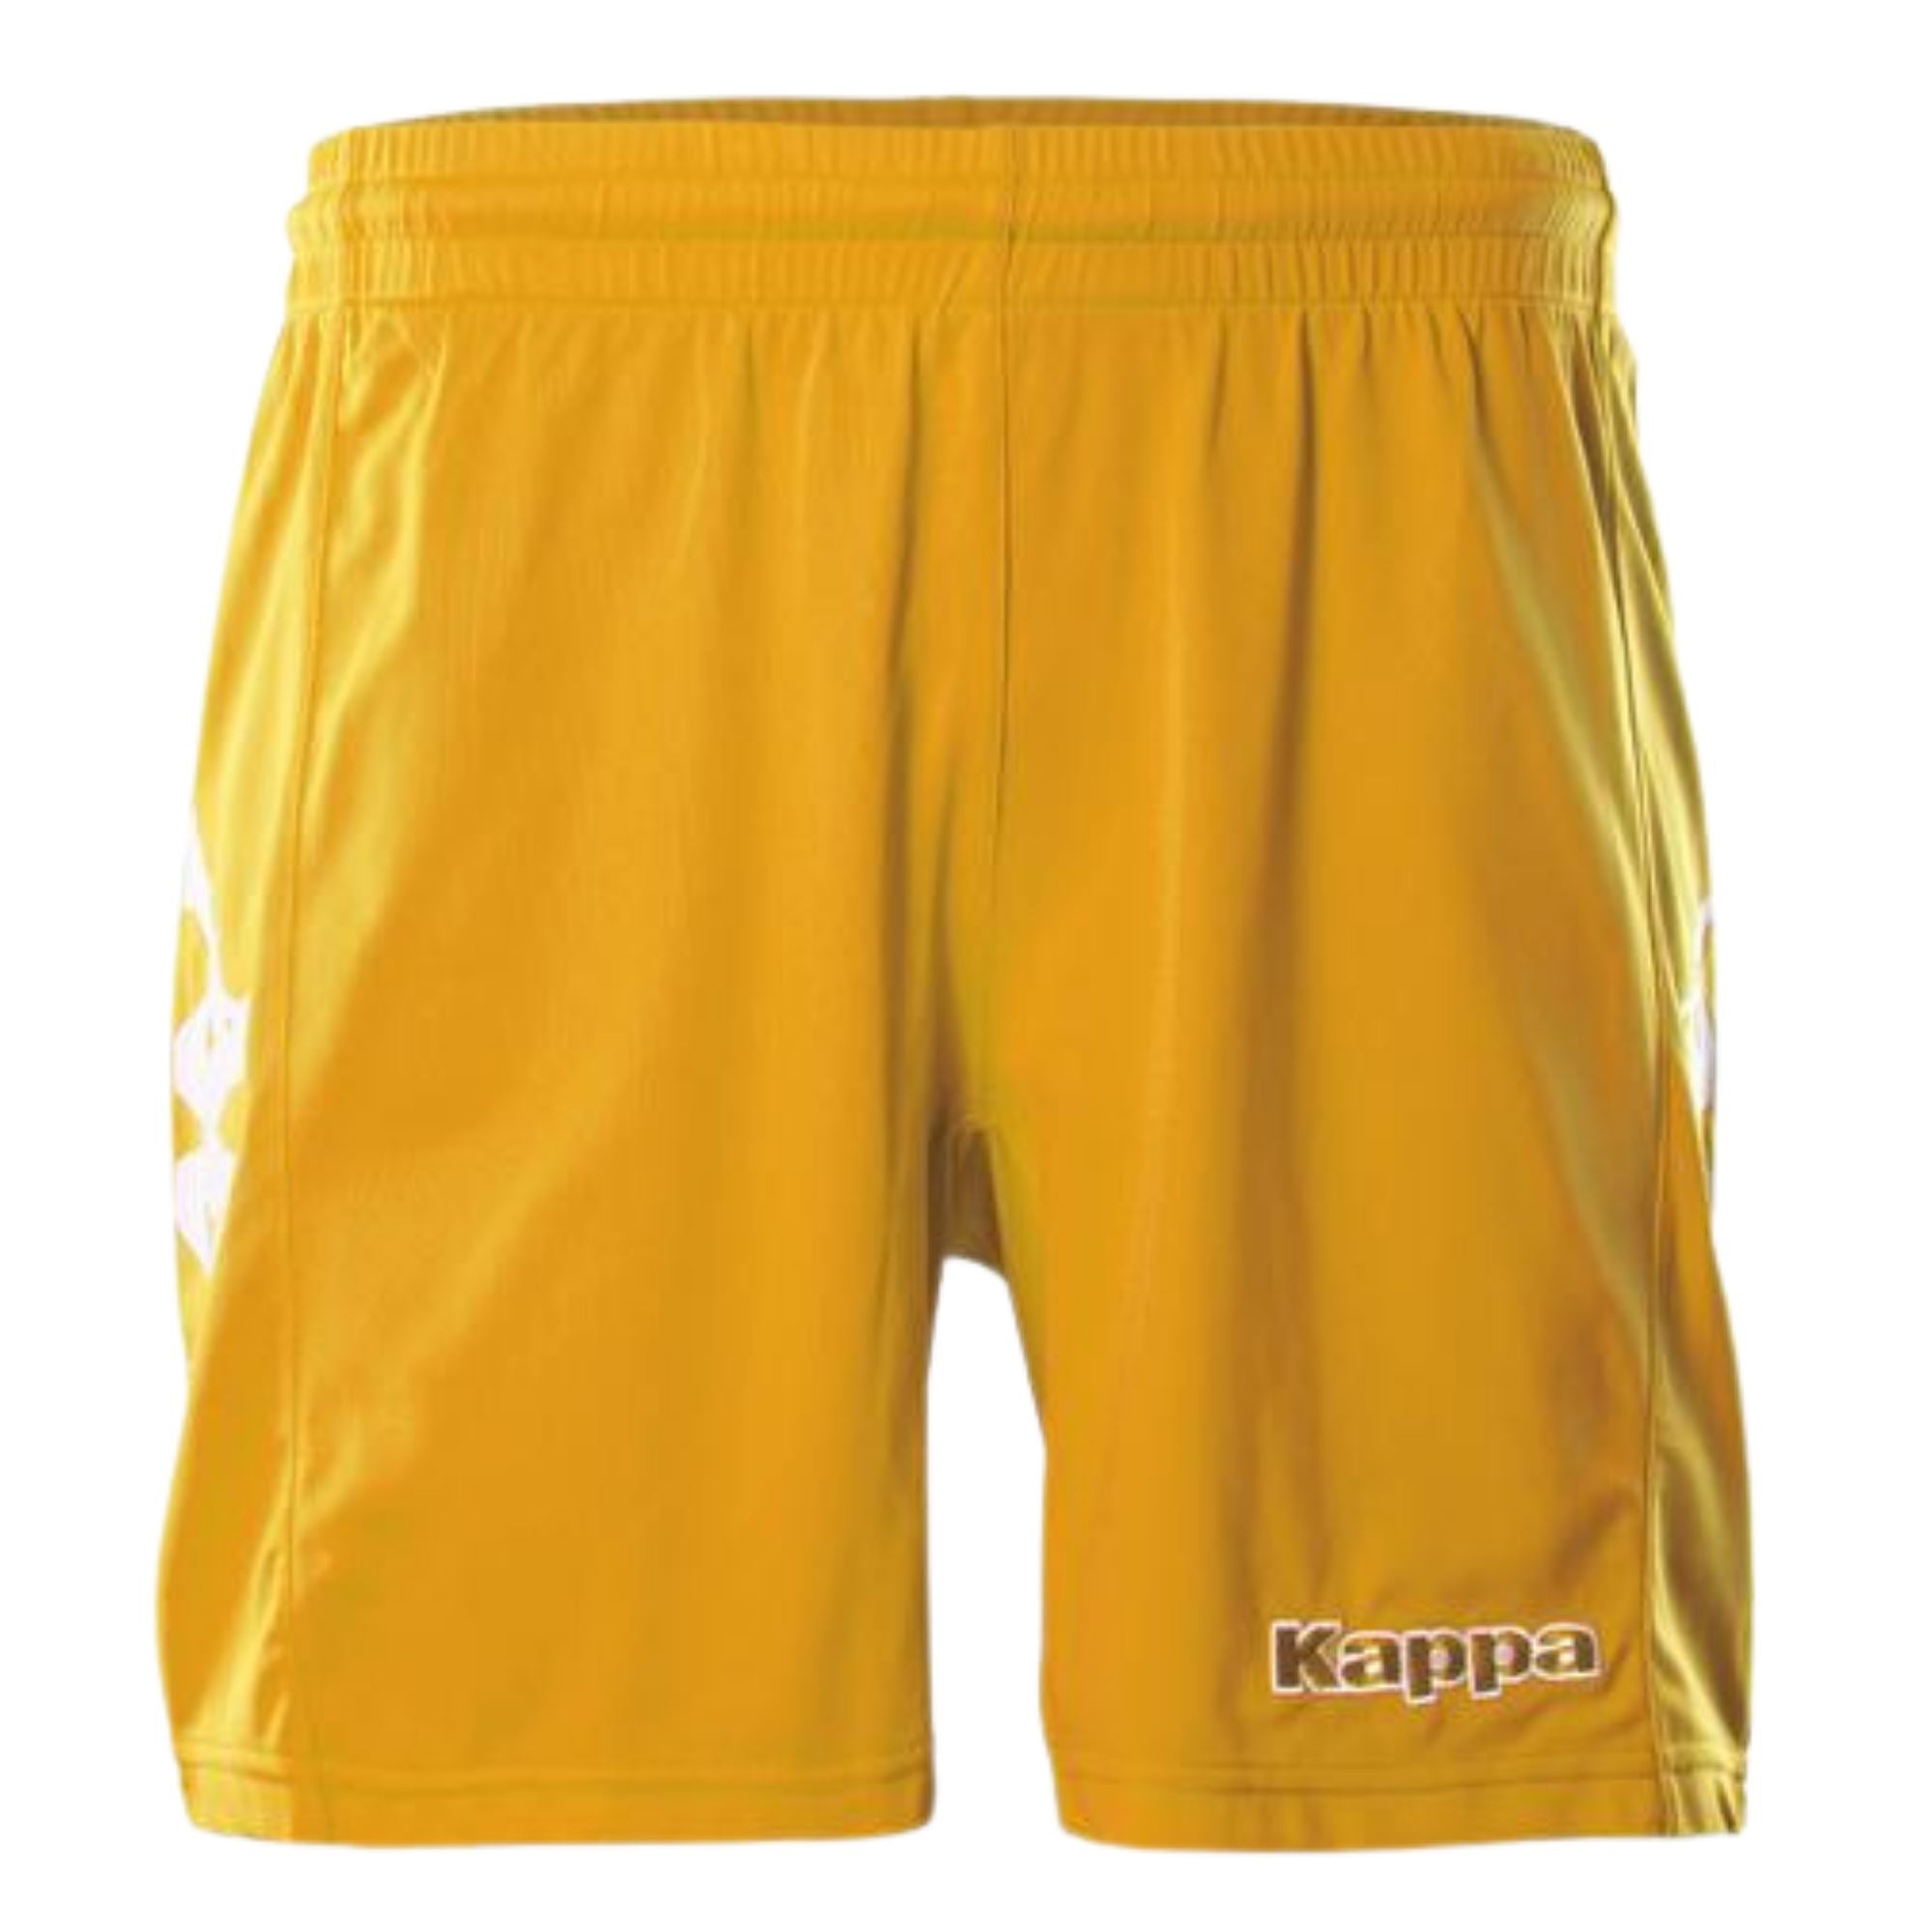 Kappa Youth Shorts - ITASPORT